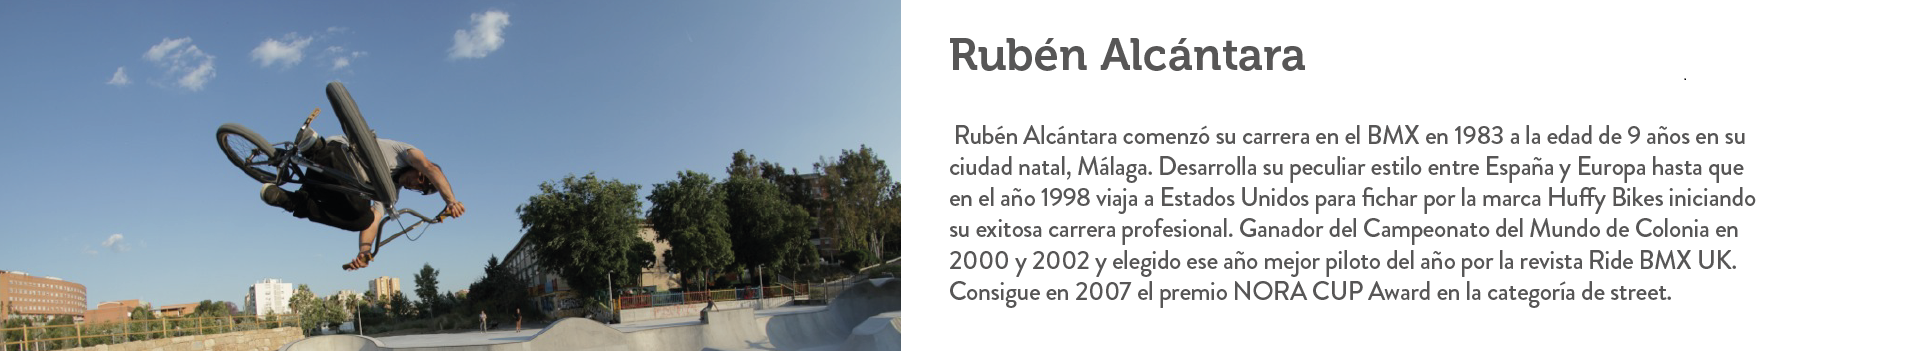 Ruben Alcantara